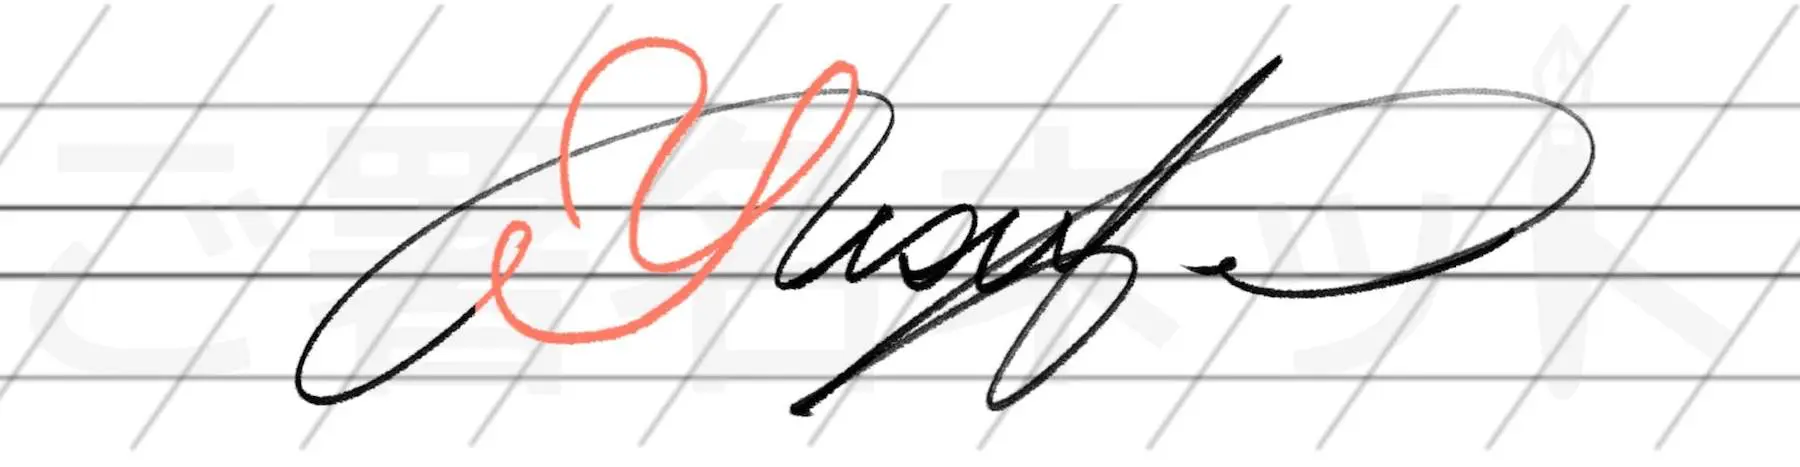 カリグラフィを用いた手書きサインの例サンプル